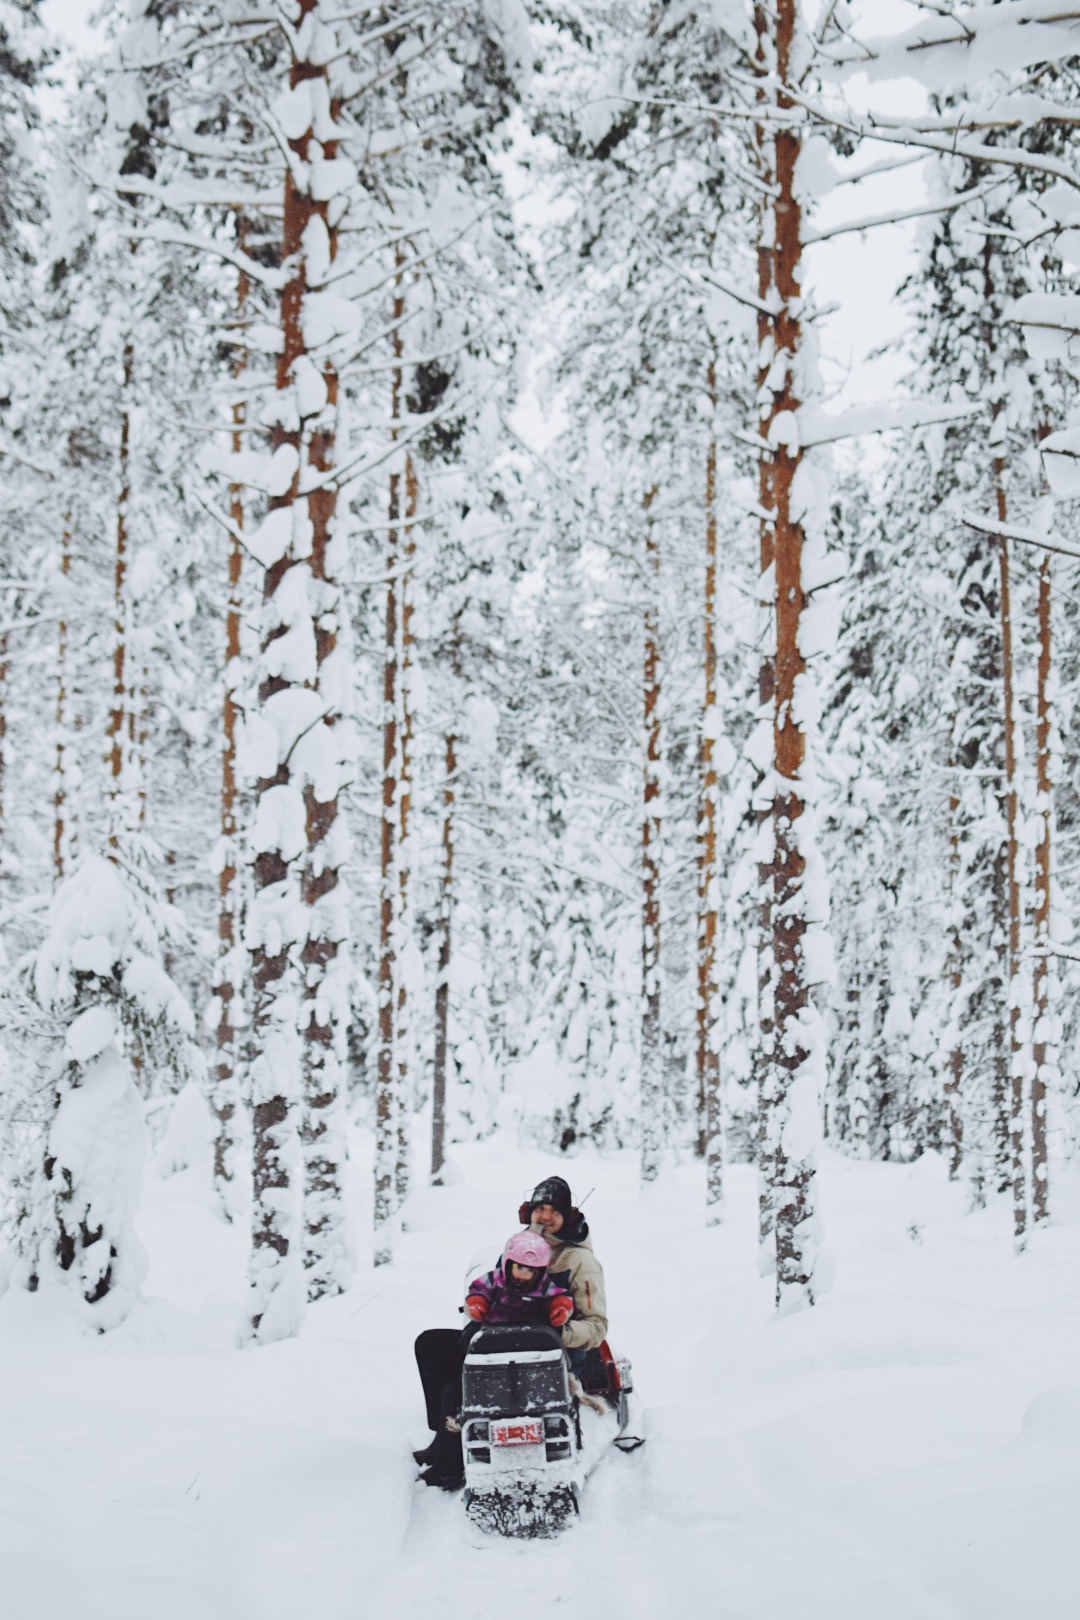 På en skoter sitter Isabells sambo Fredrik tillsammans med deras dotter Lo. Snön ligger tjock både på marken och trädgrenarna.